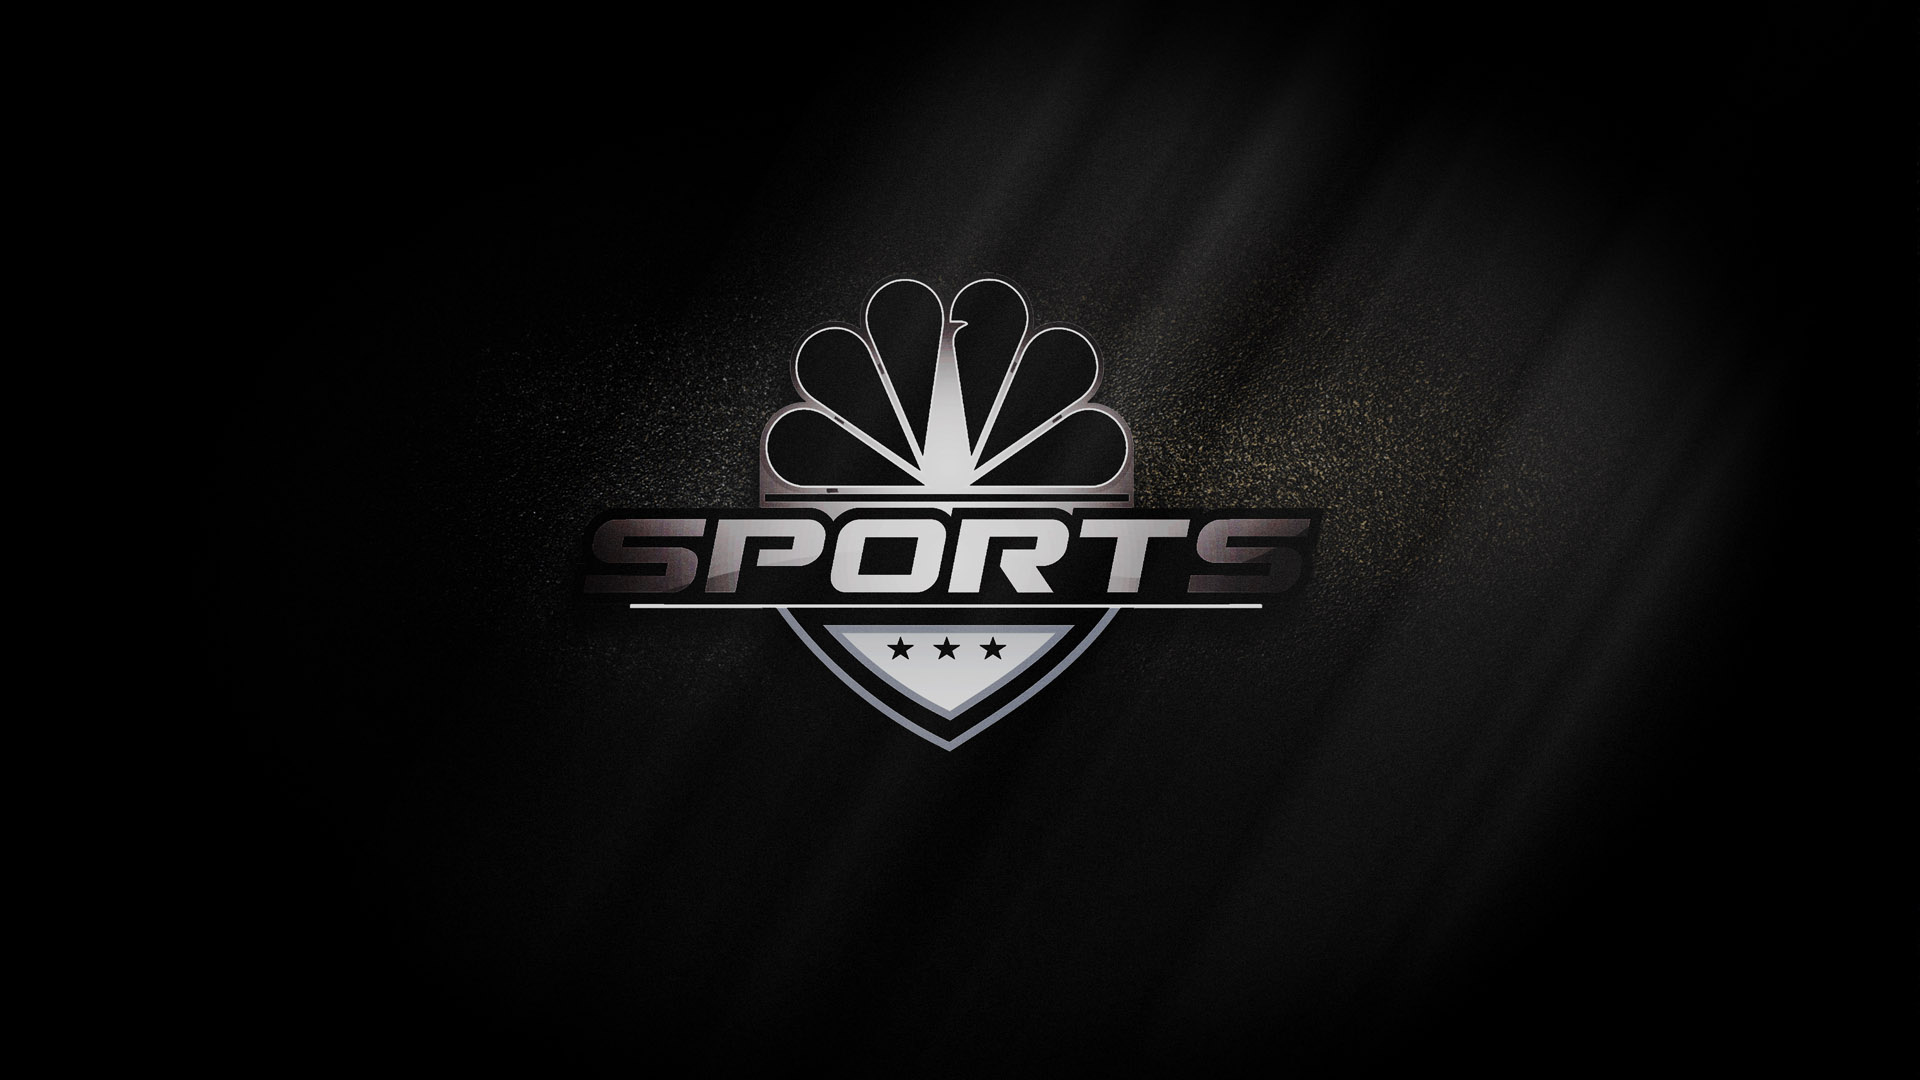 NBC_Sports-ID_HD-3.jpg